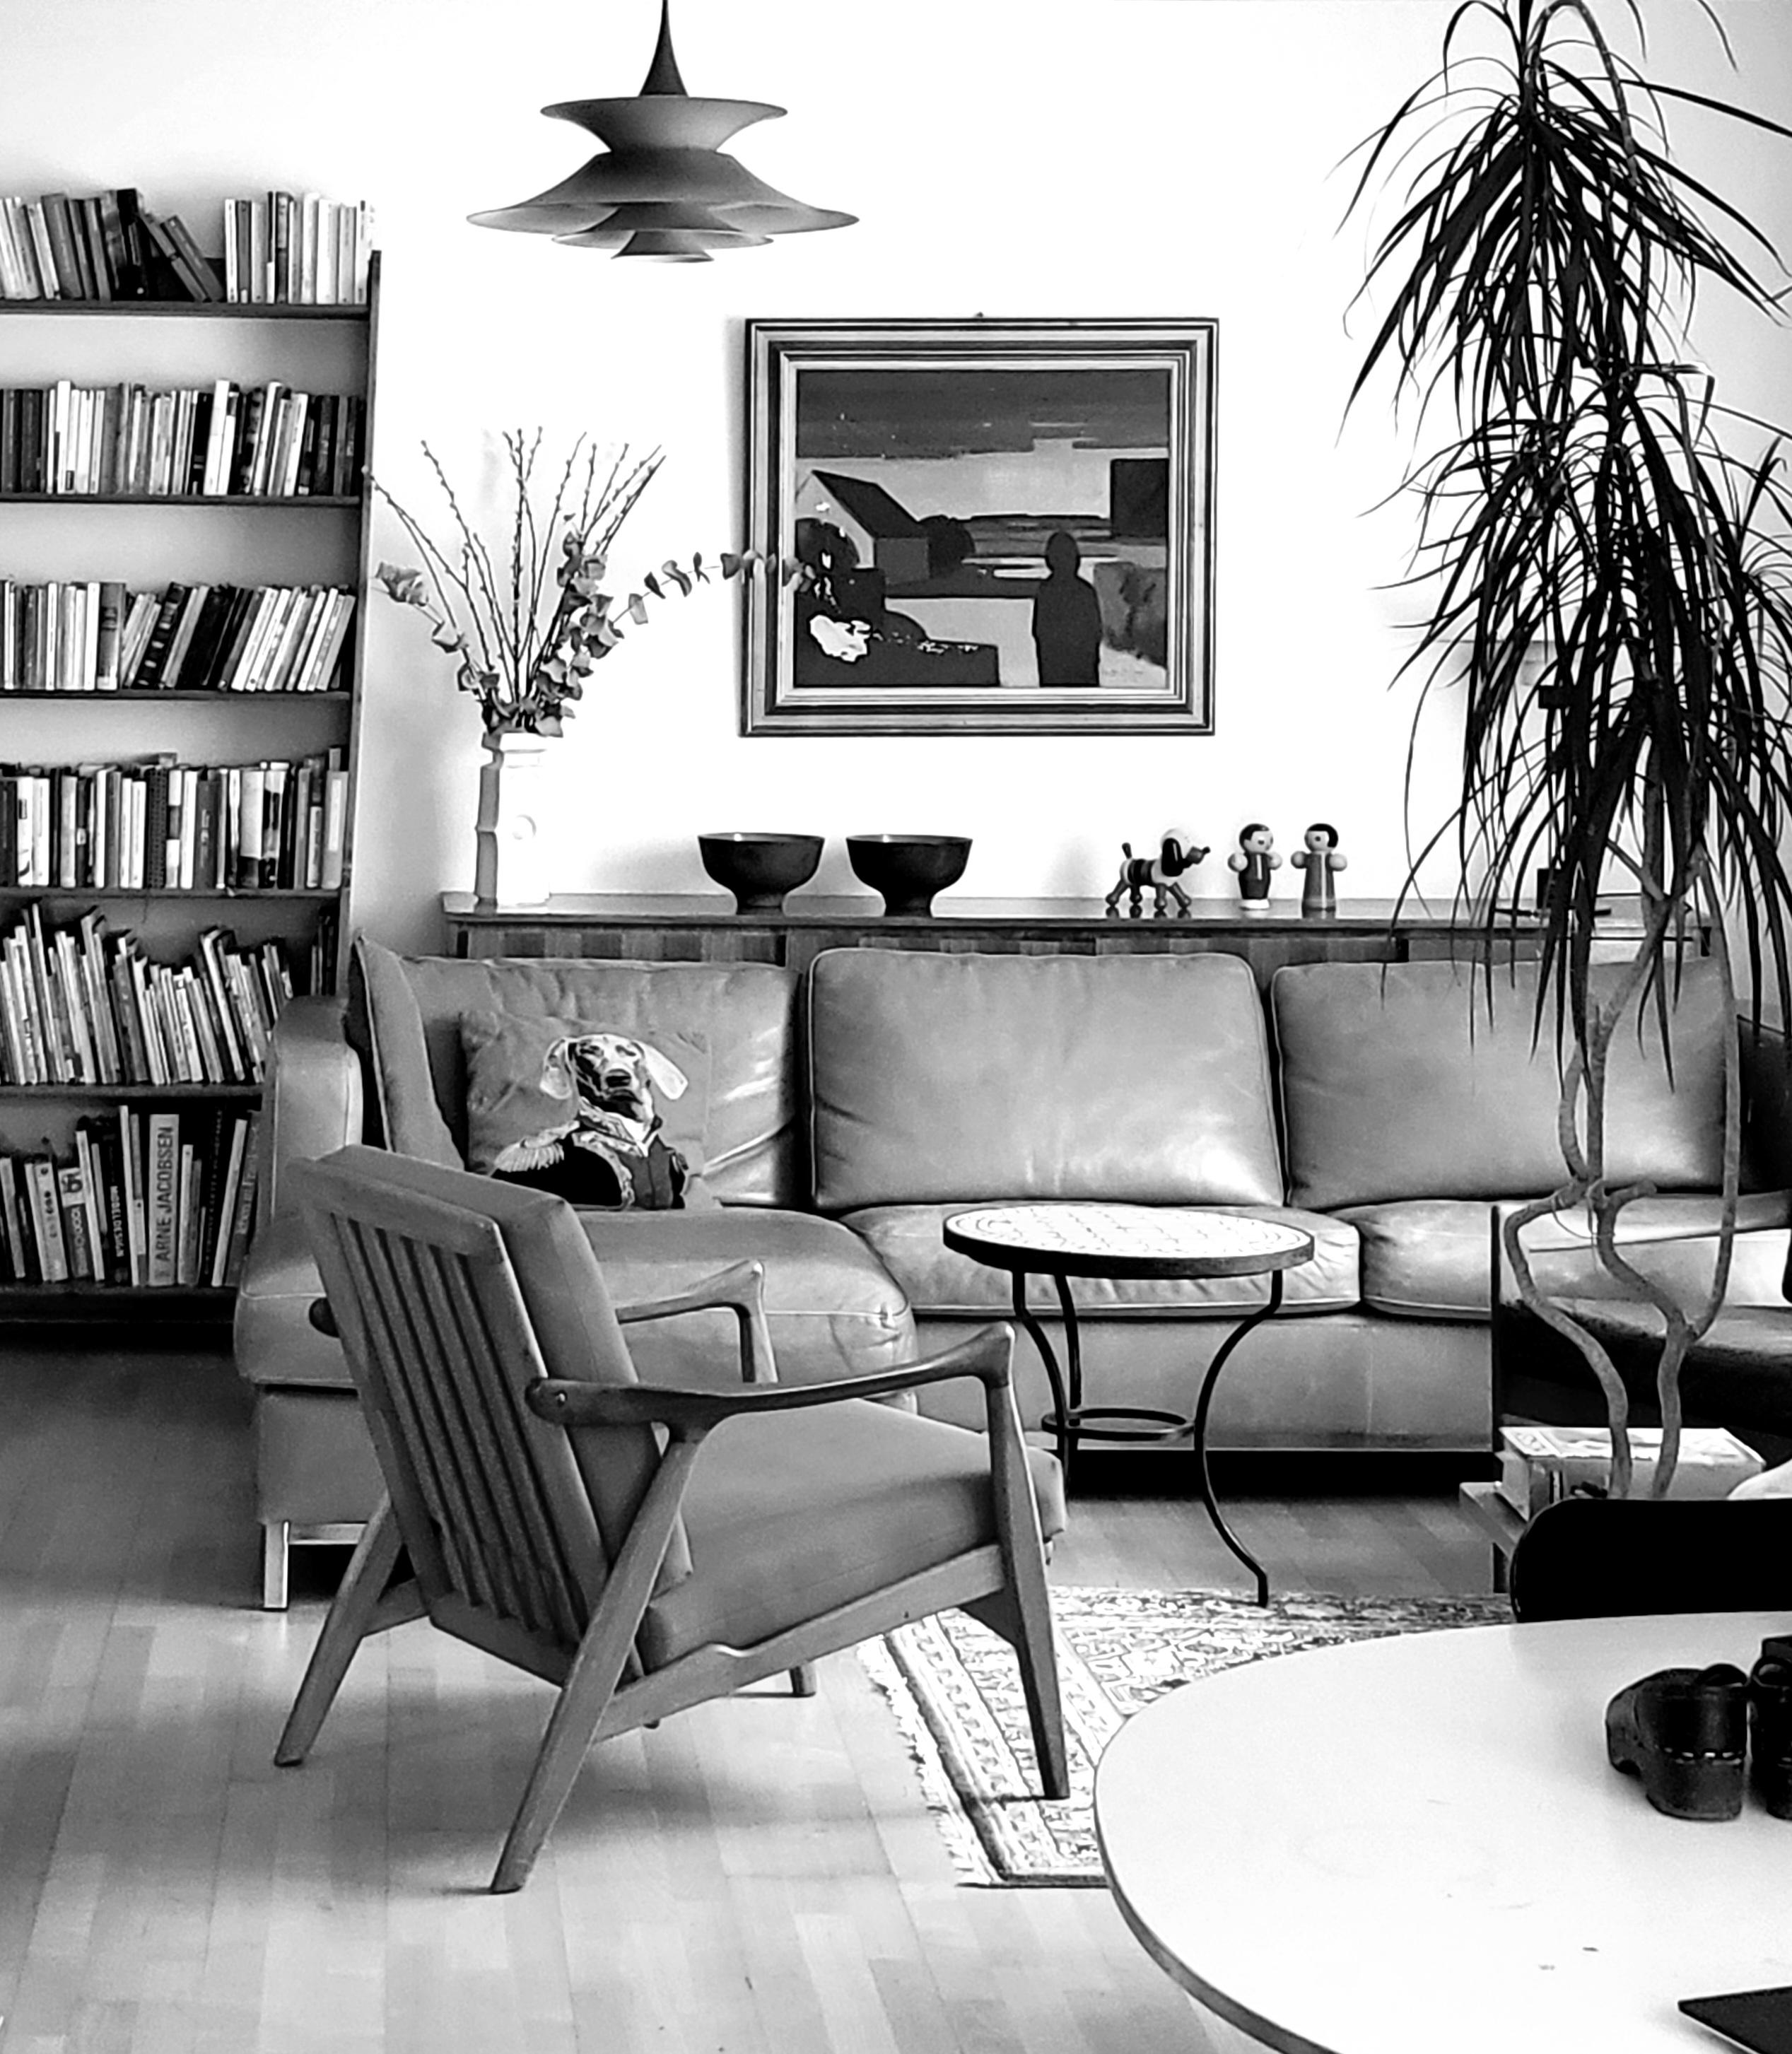 Dänische Deckenleuchte, die in den 1970er Jahren von Erik Balslev für Fog & Morup entworfen wurde. Der zweifarbige gebrannte braune Lack verleiht jedem Raum einen Hauch von Raffinesse. Das weiße Kabel verstärkt seine elegante Ausstrahlung.

Diese